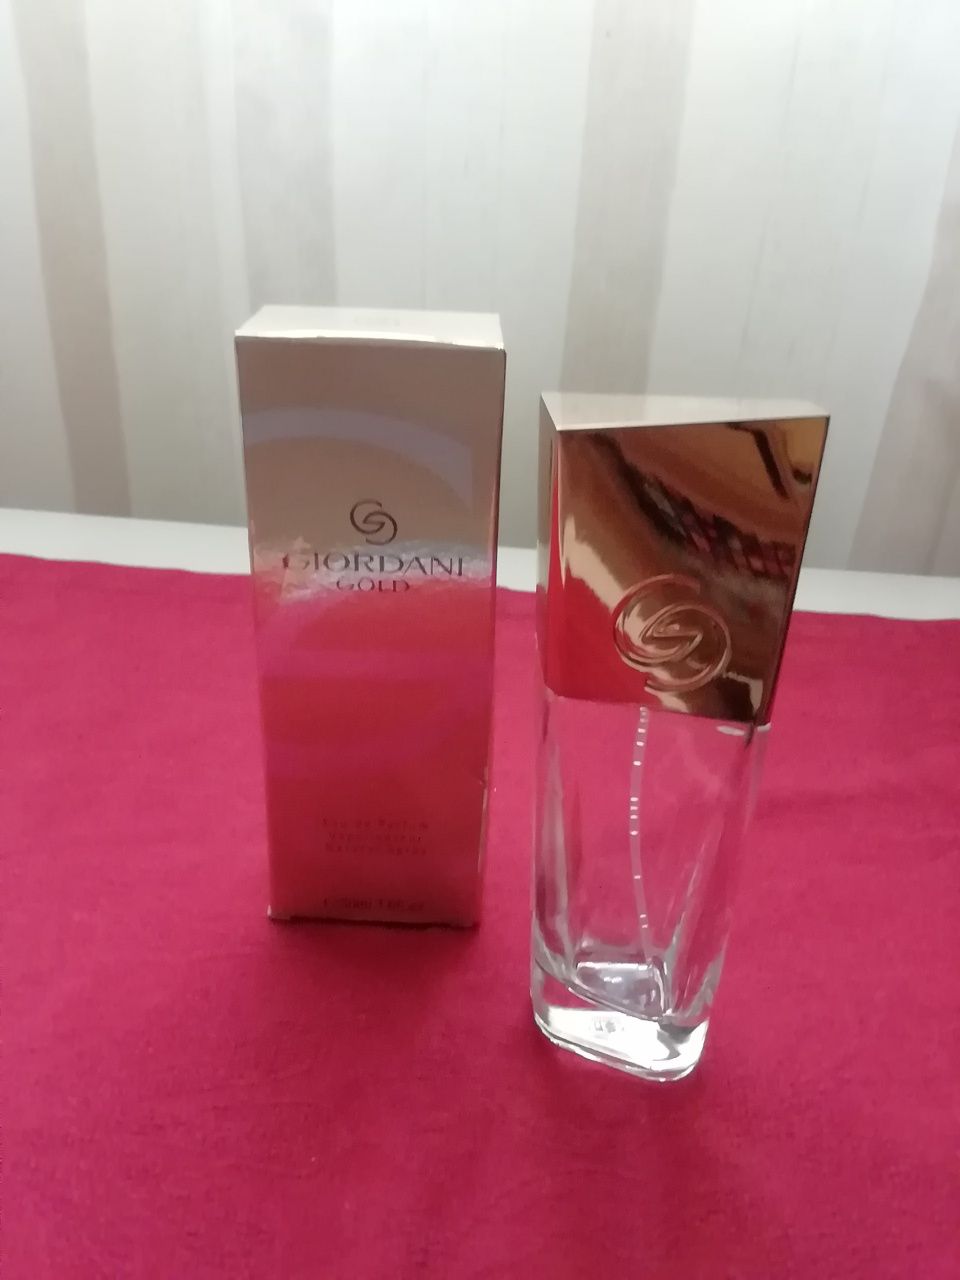 Frasco vazio + caixa de perfume Giordani Gold